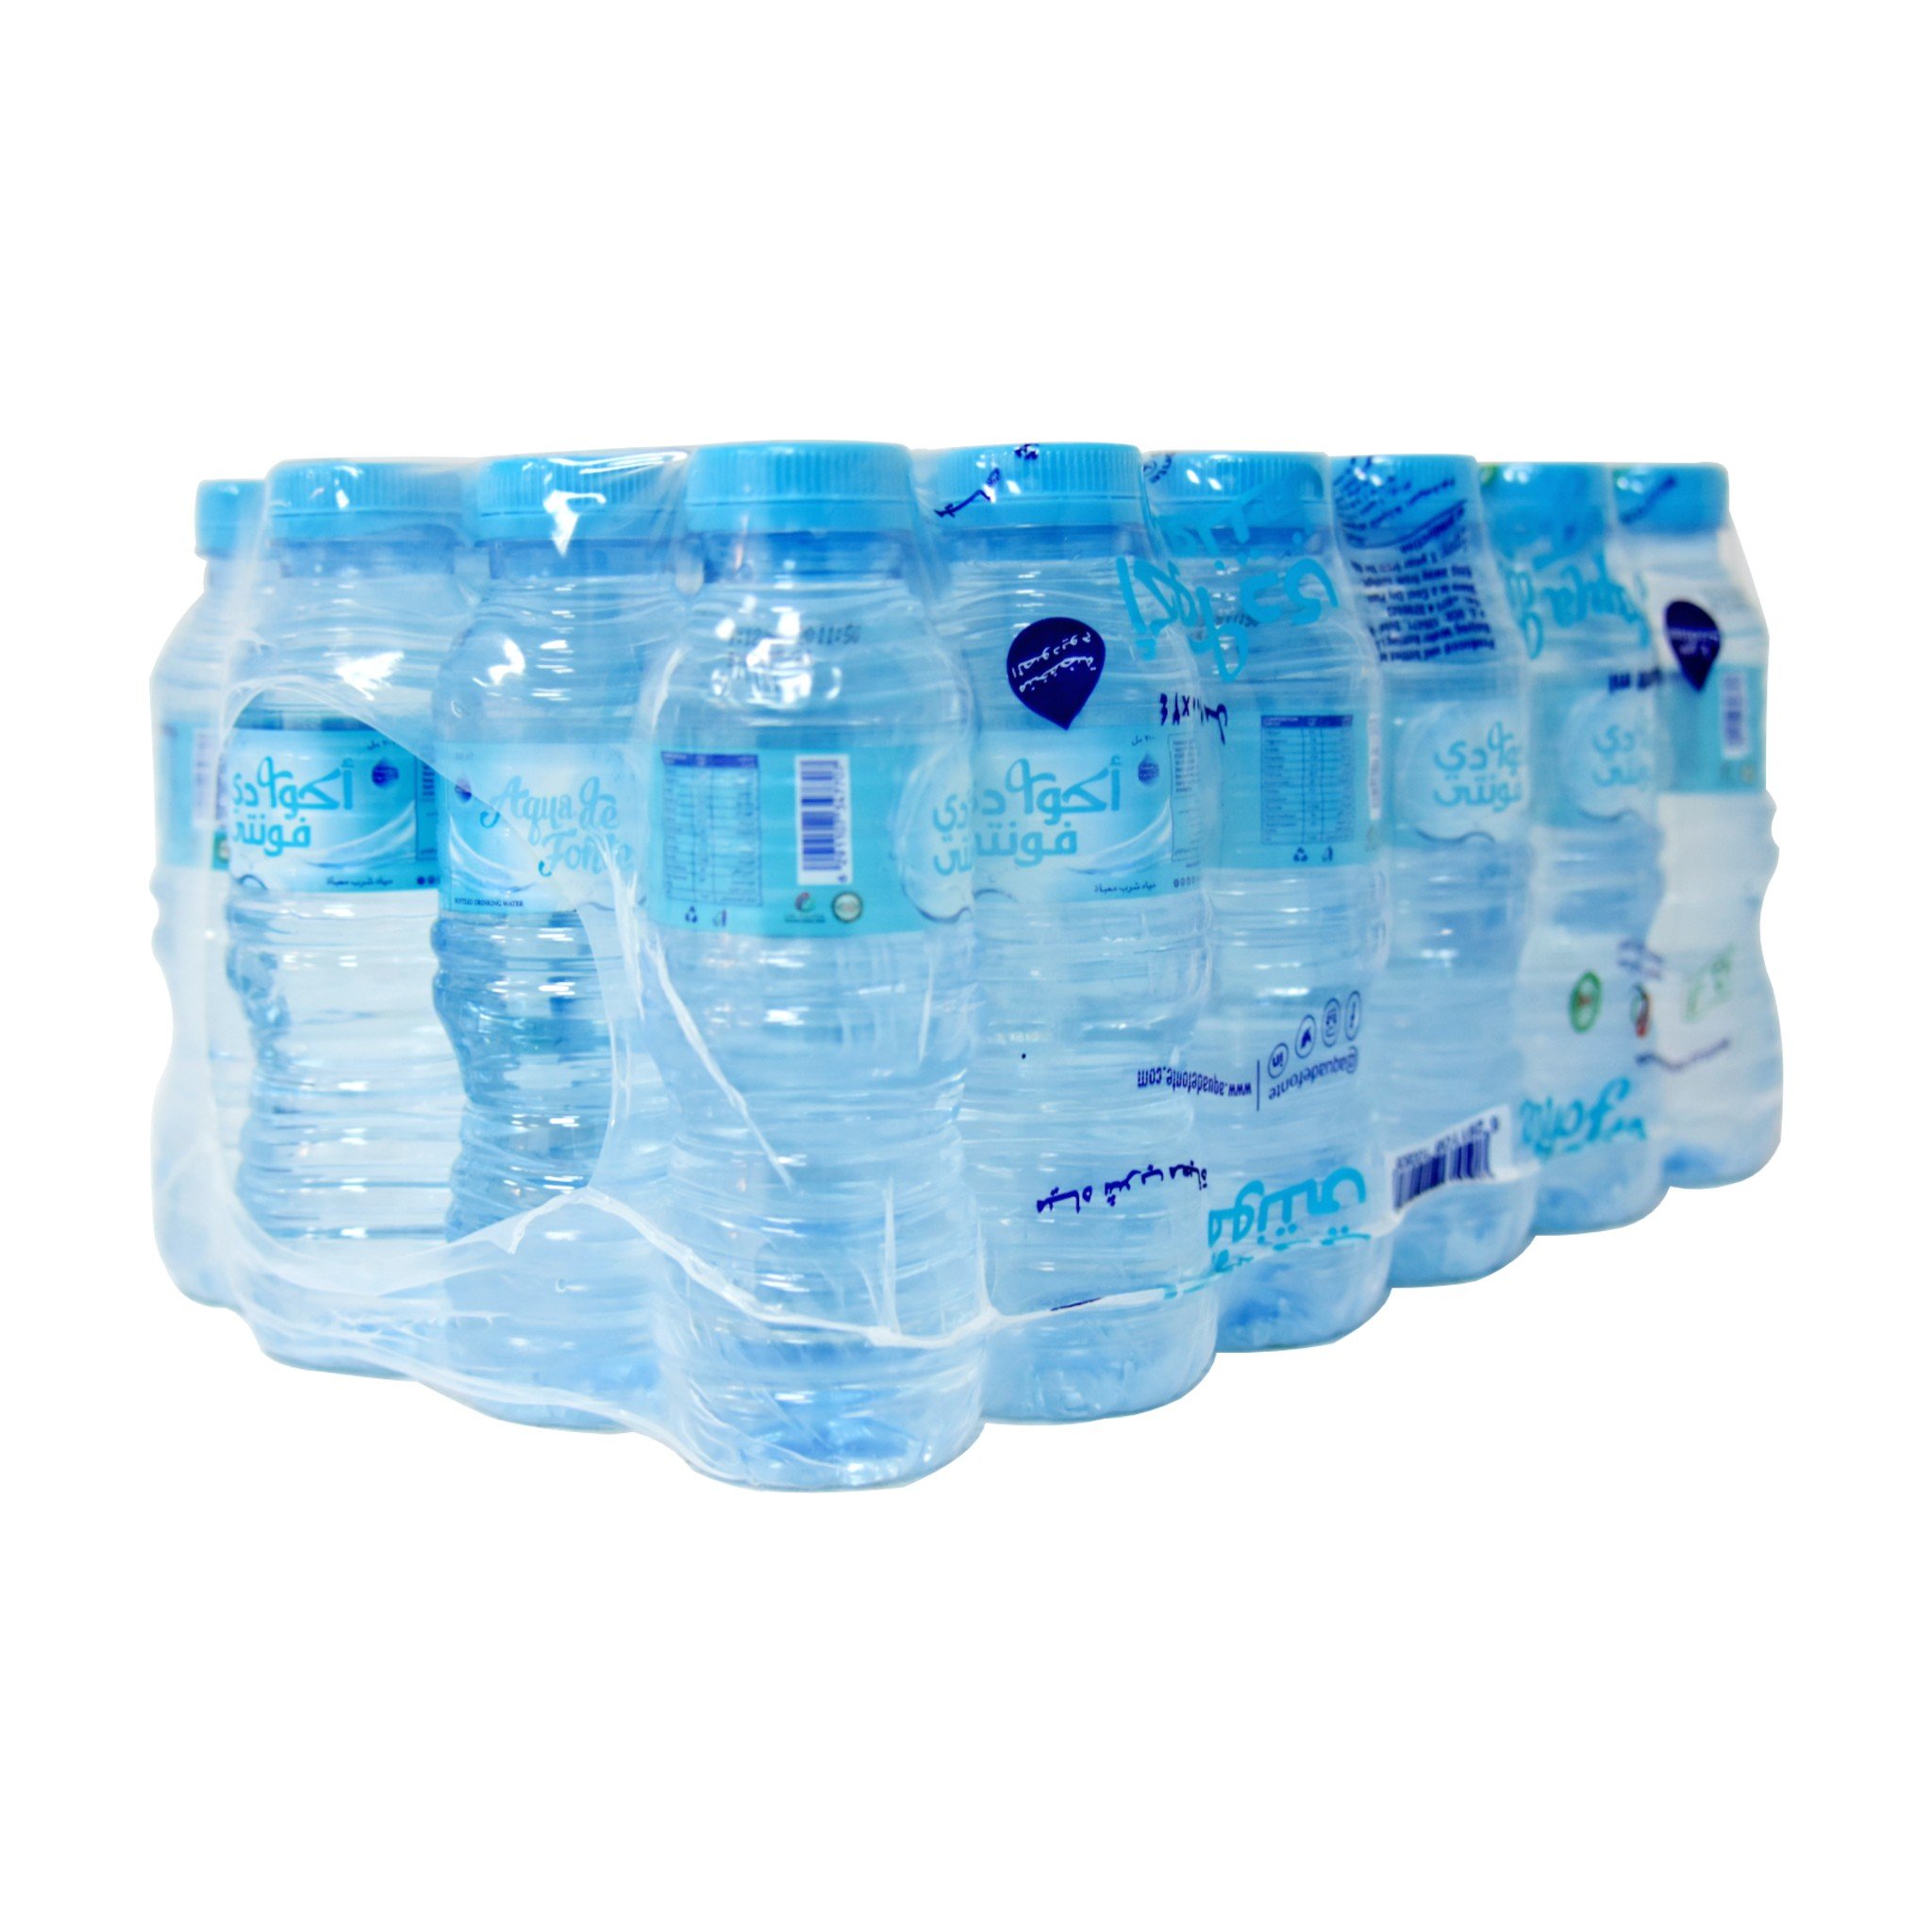 Aquawater - Tous les produits Aquawater